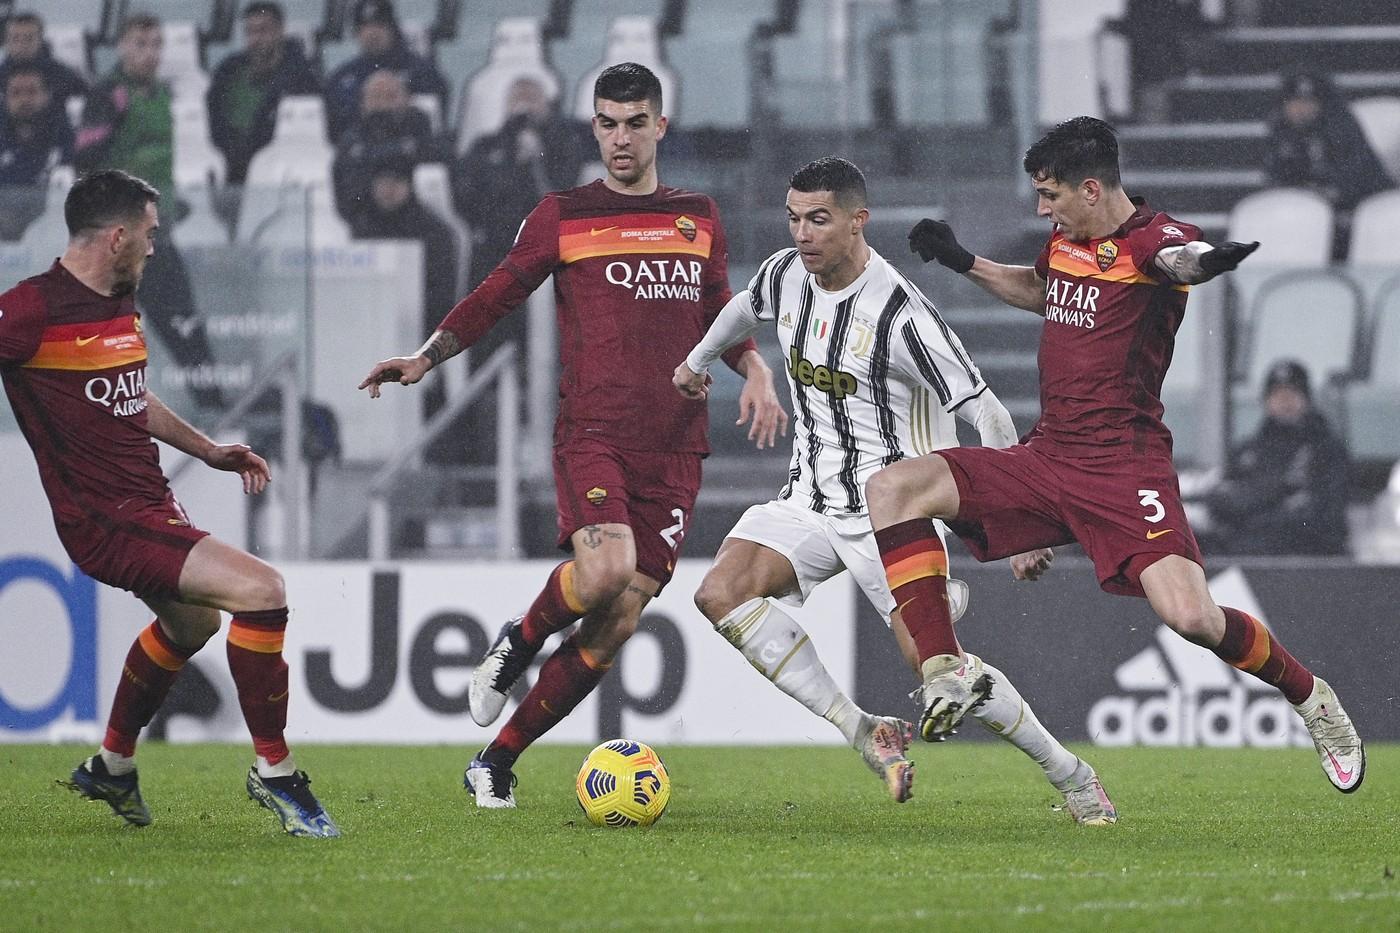 FOTO - I quattro errori romanisti alla base del gol di Ronaldo in Juve-Roma©LaPresse